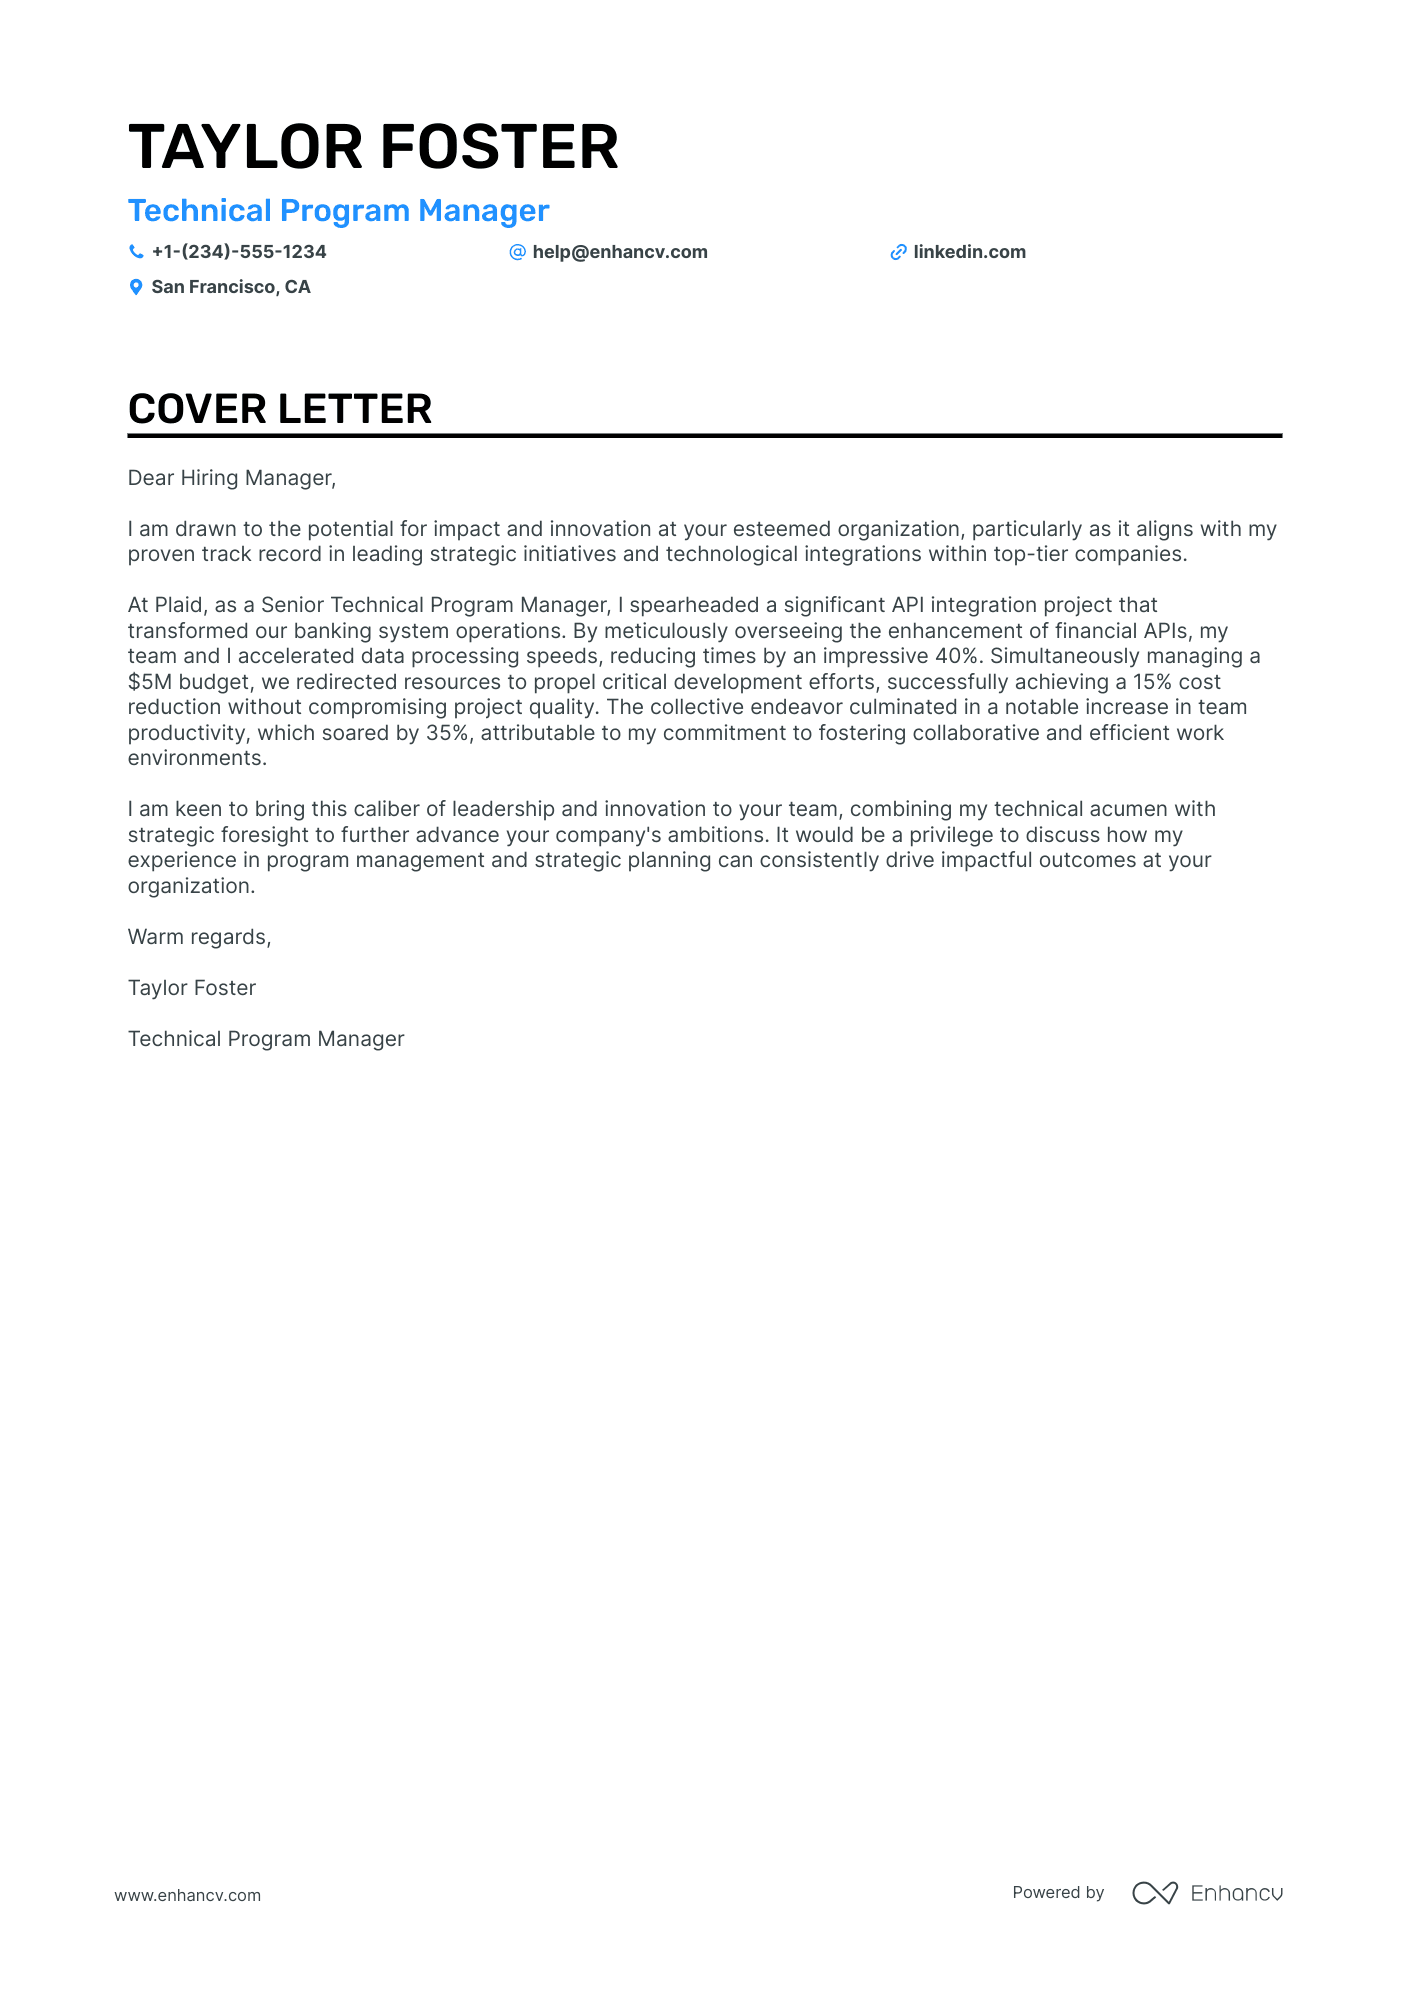 Program Manager cover letter